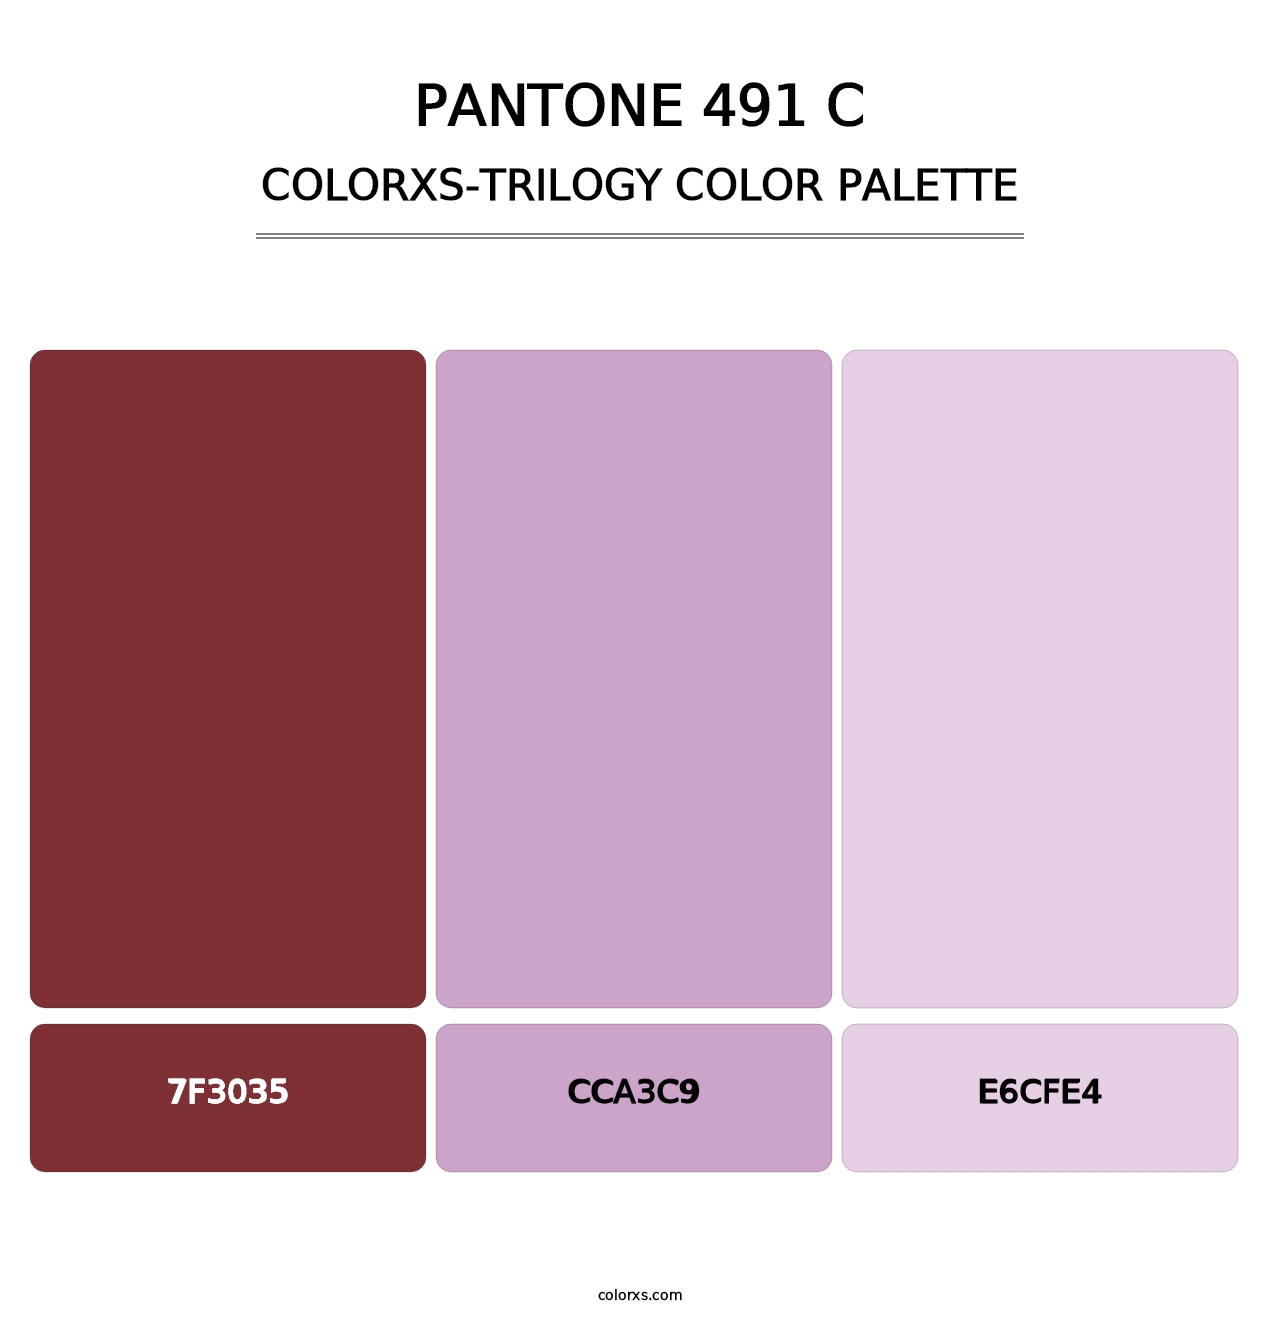 PANTONE 491 C - Colorxs Trilogy Palette